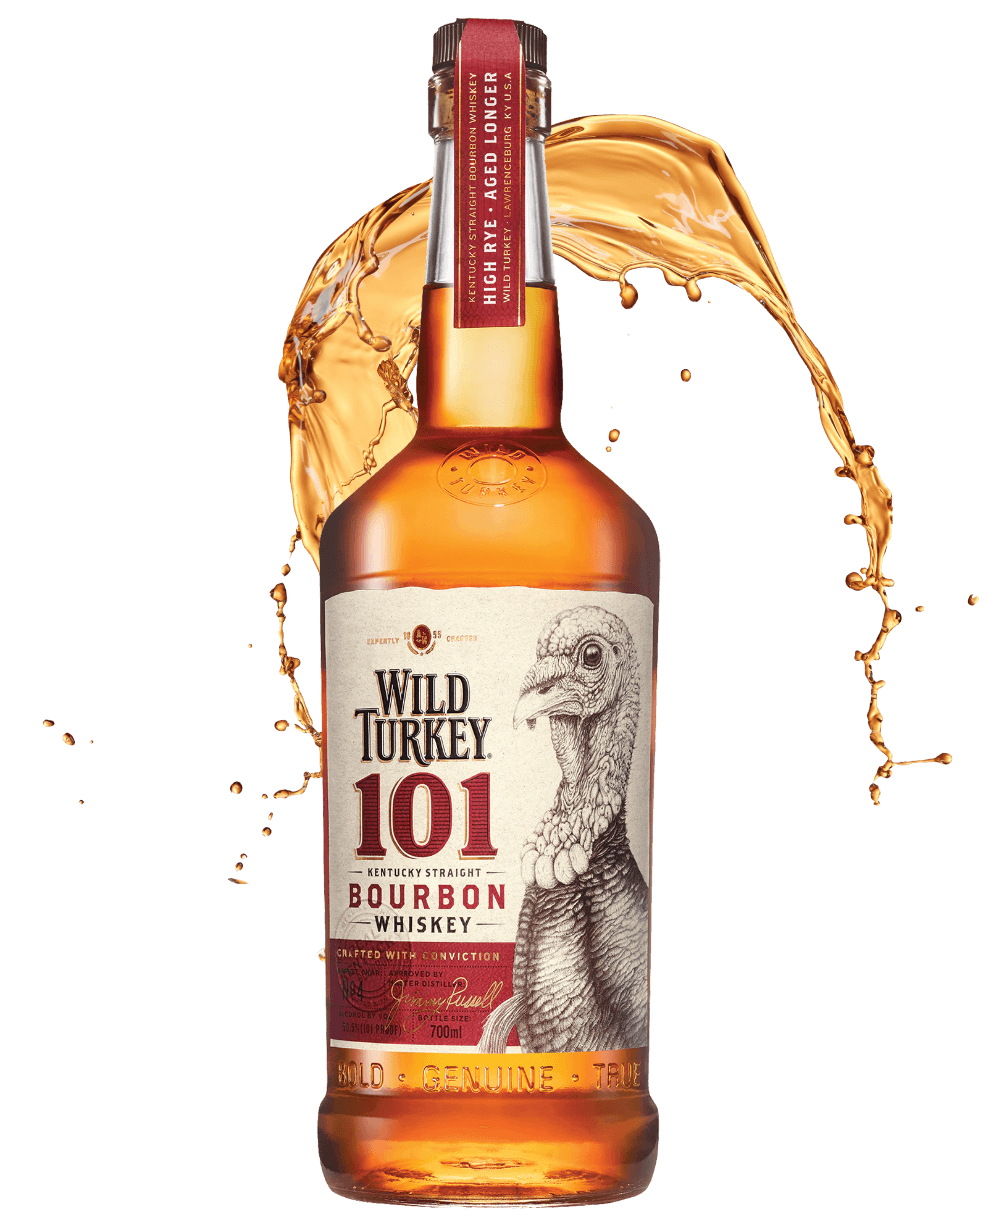 Butelka Wild Turkey 101 na tle rozpryskującego bourbona